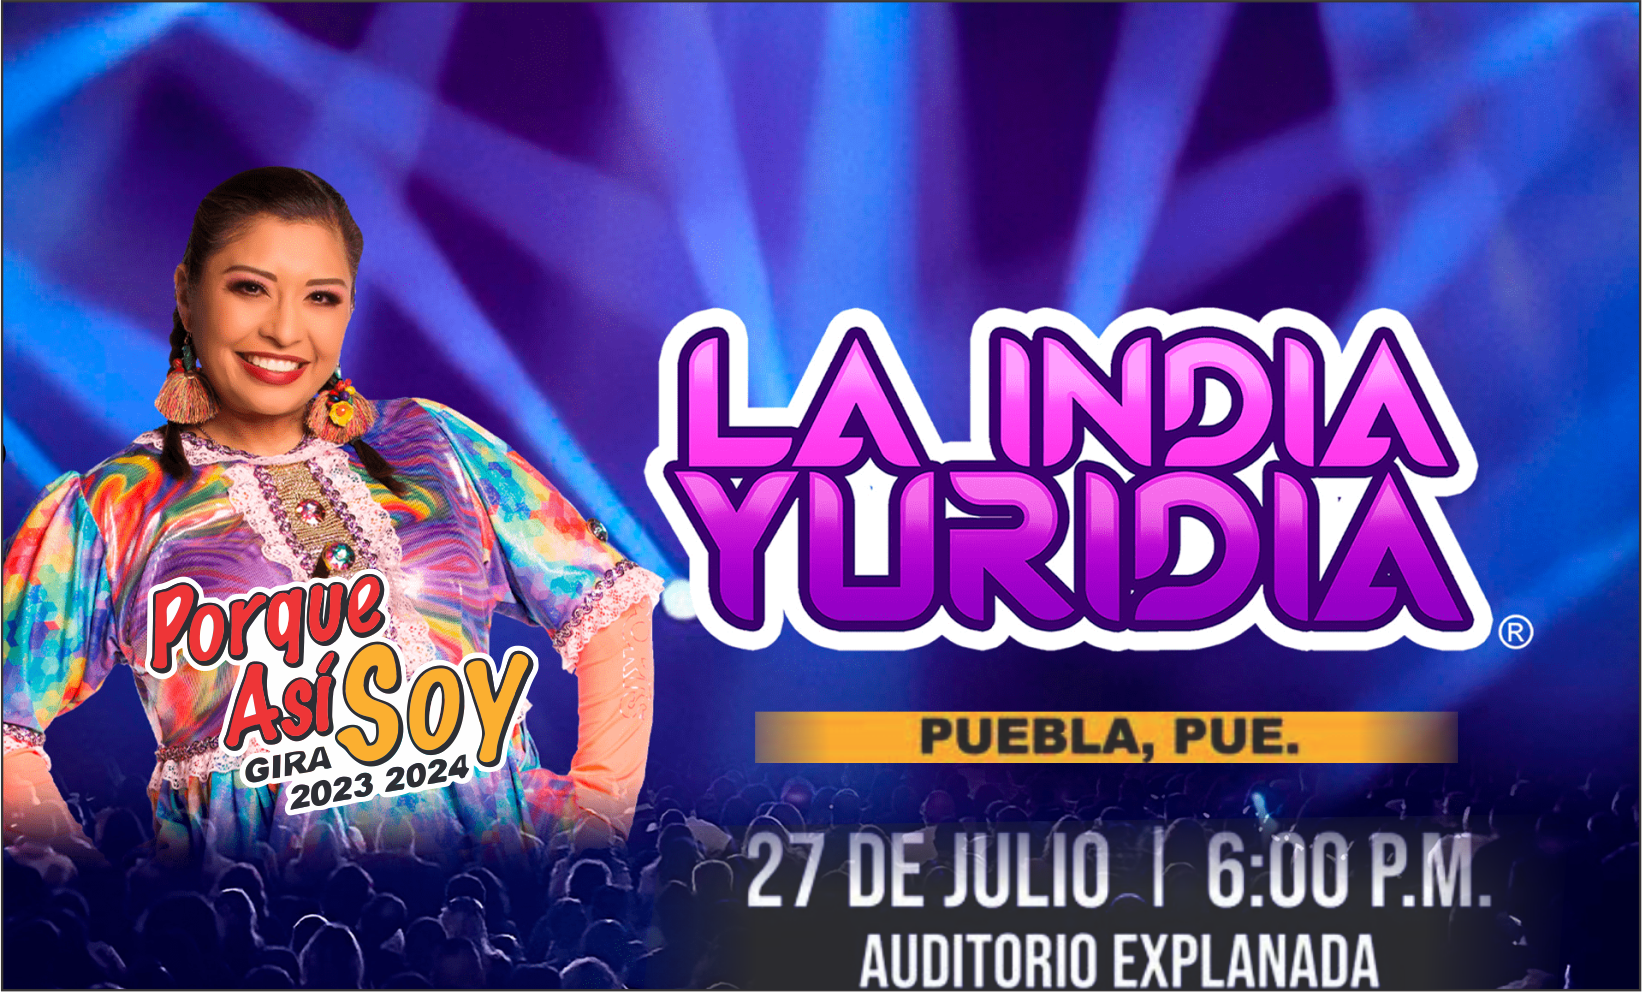 La India Yuridia en Puebla